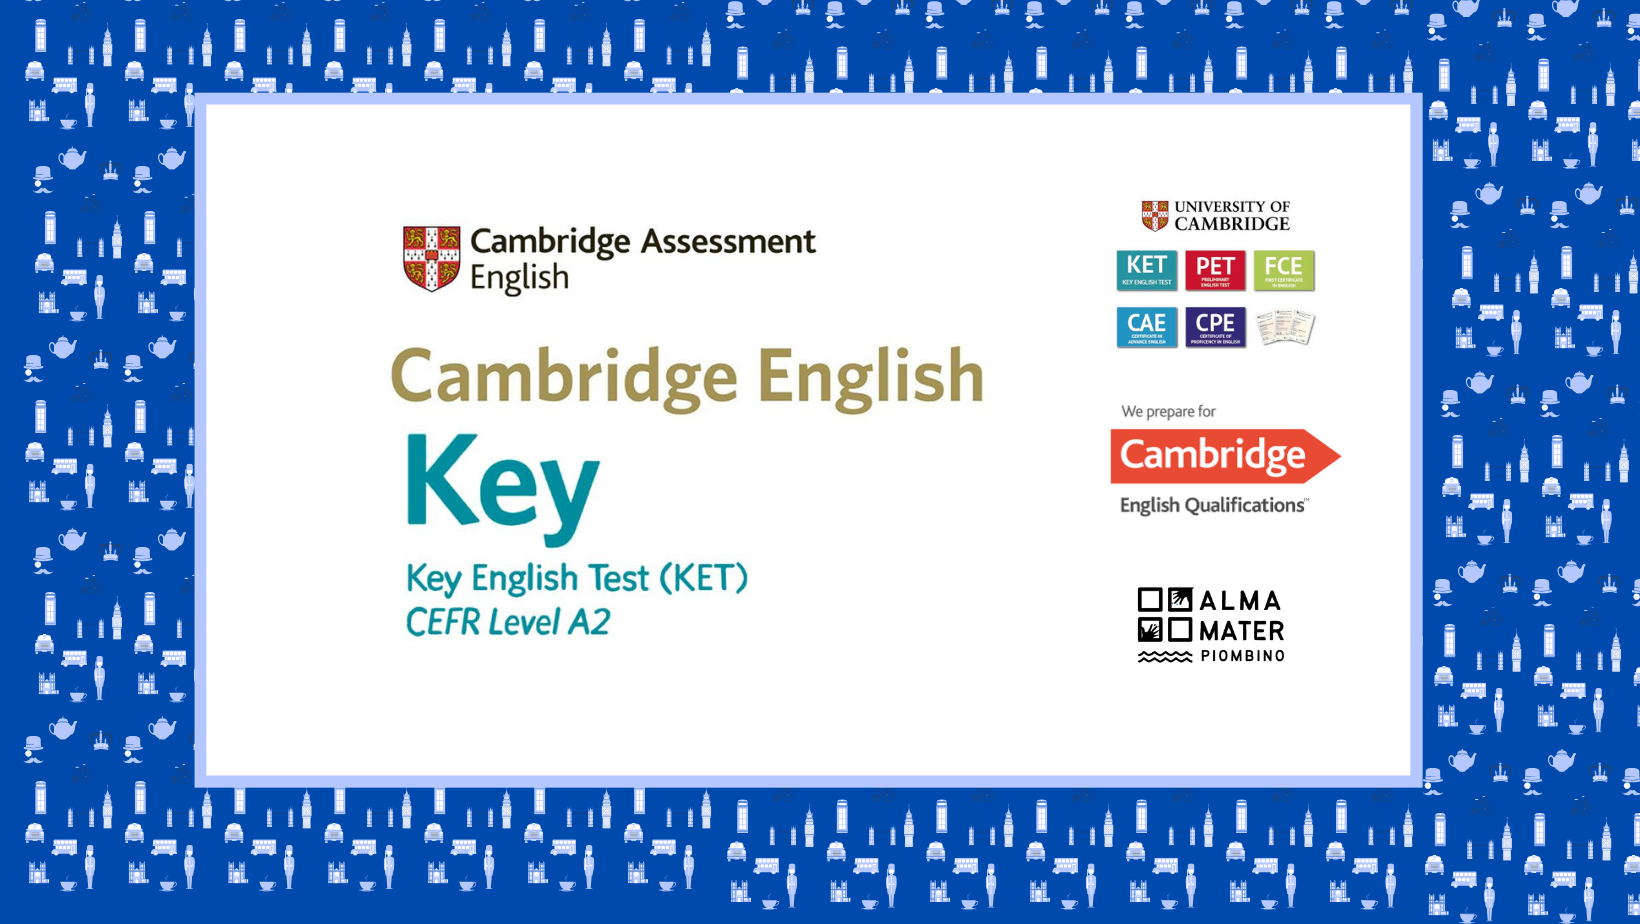 Corso di preparazione per Cambridge English: Key English Test KET a Piombino